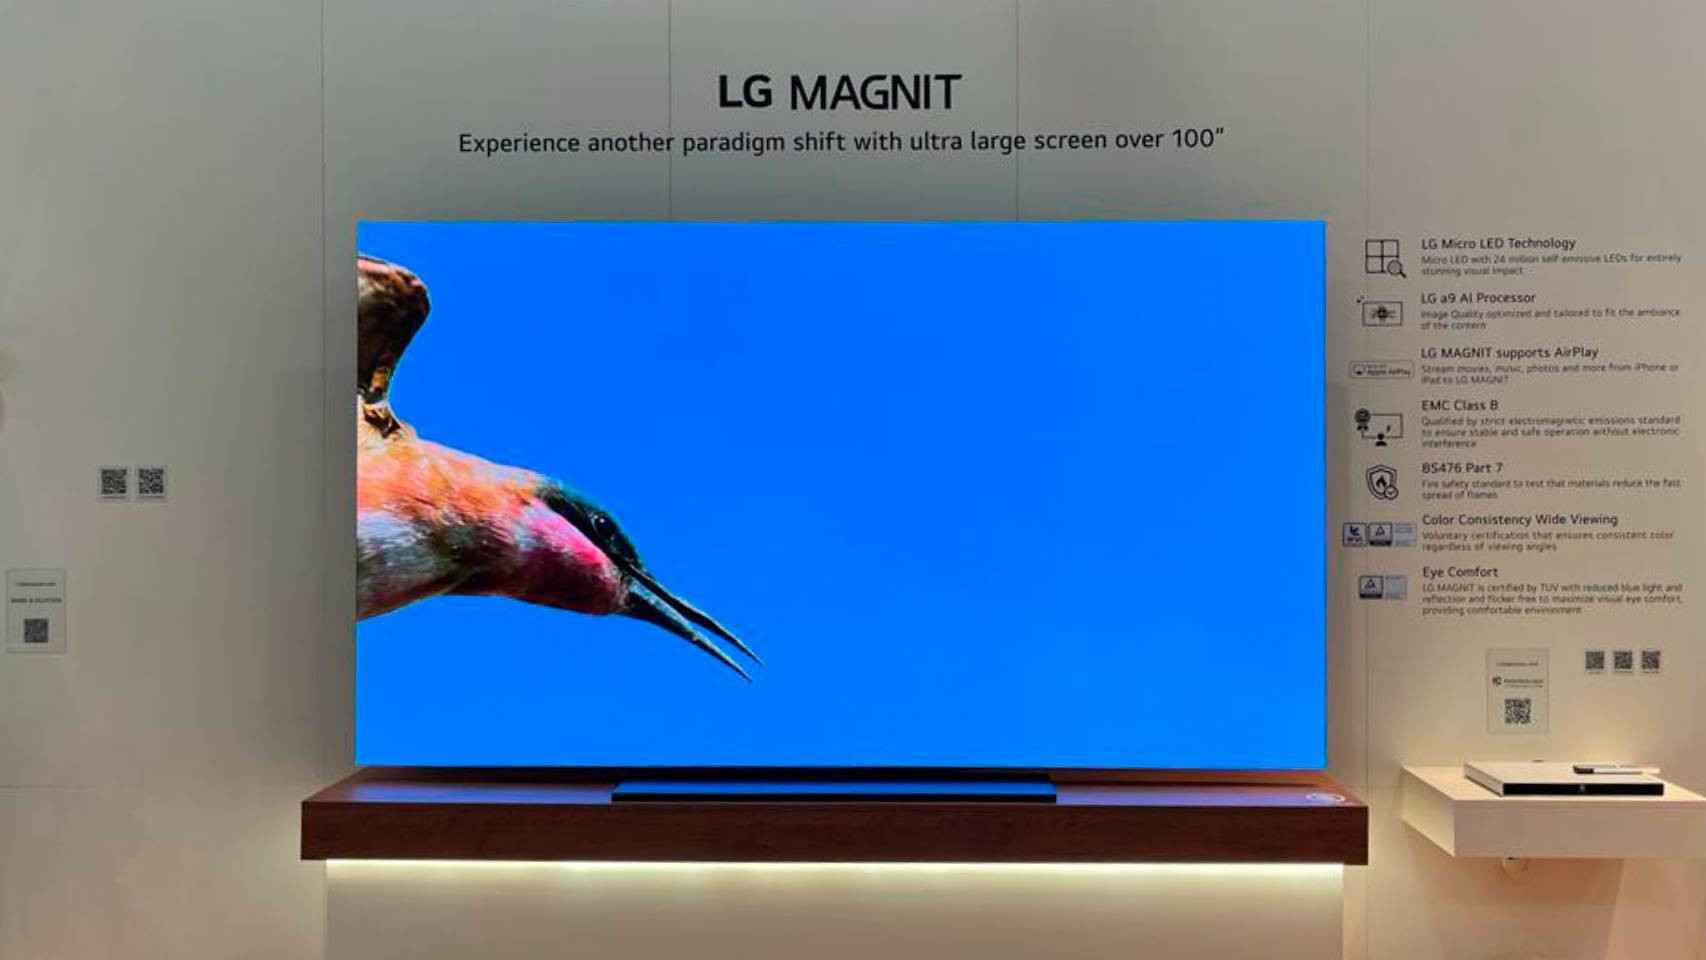 He probado el televisor mÃ¡s alucinante de LG: una enorme MicroLED no apto para todas las carteras